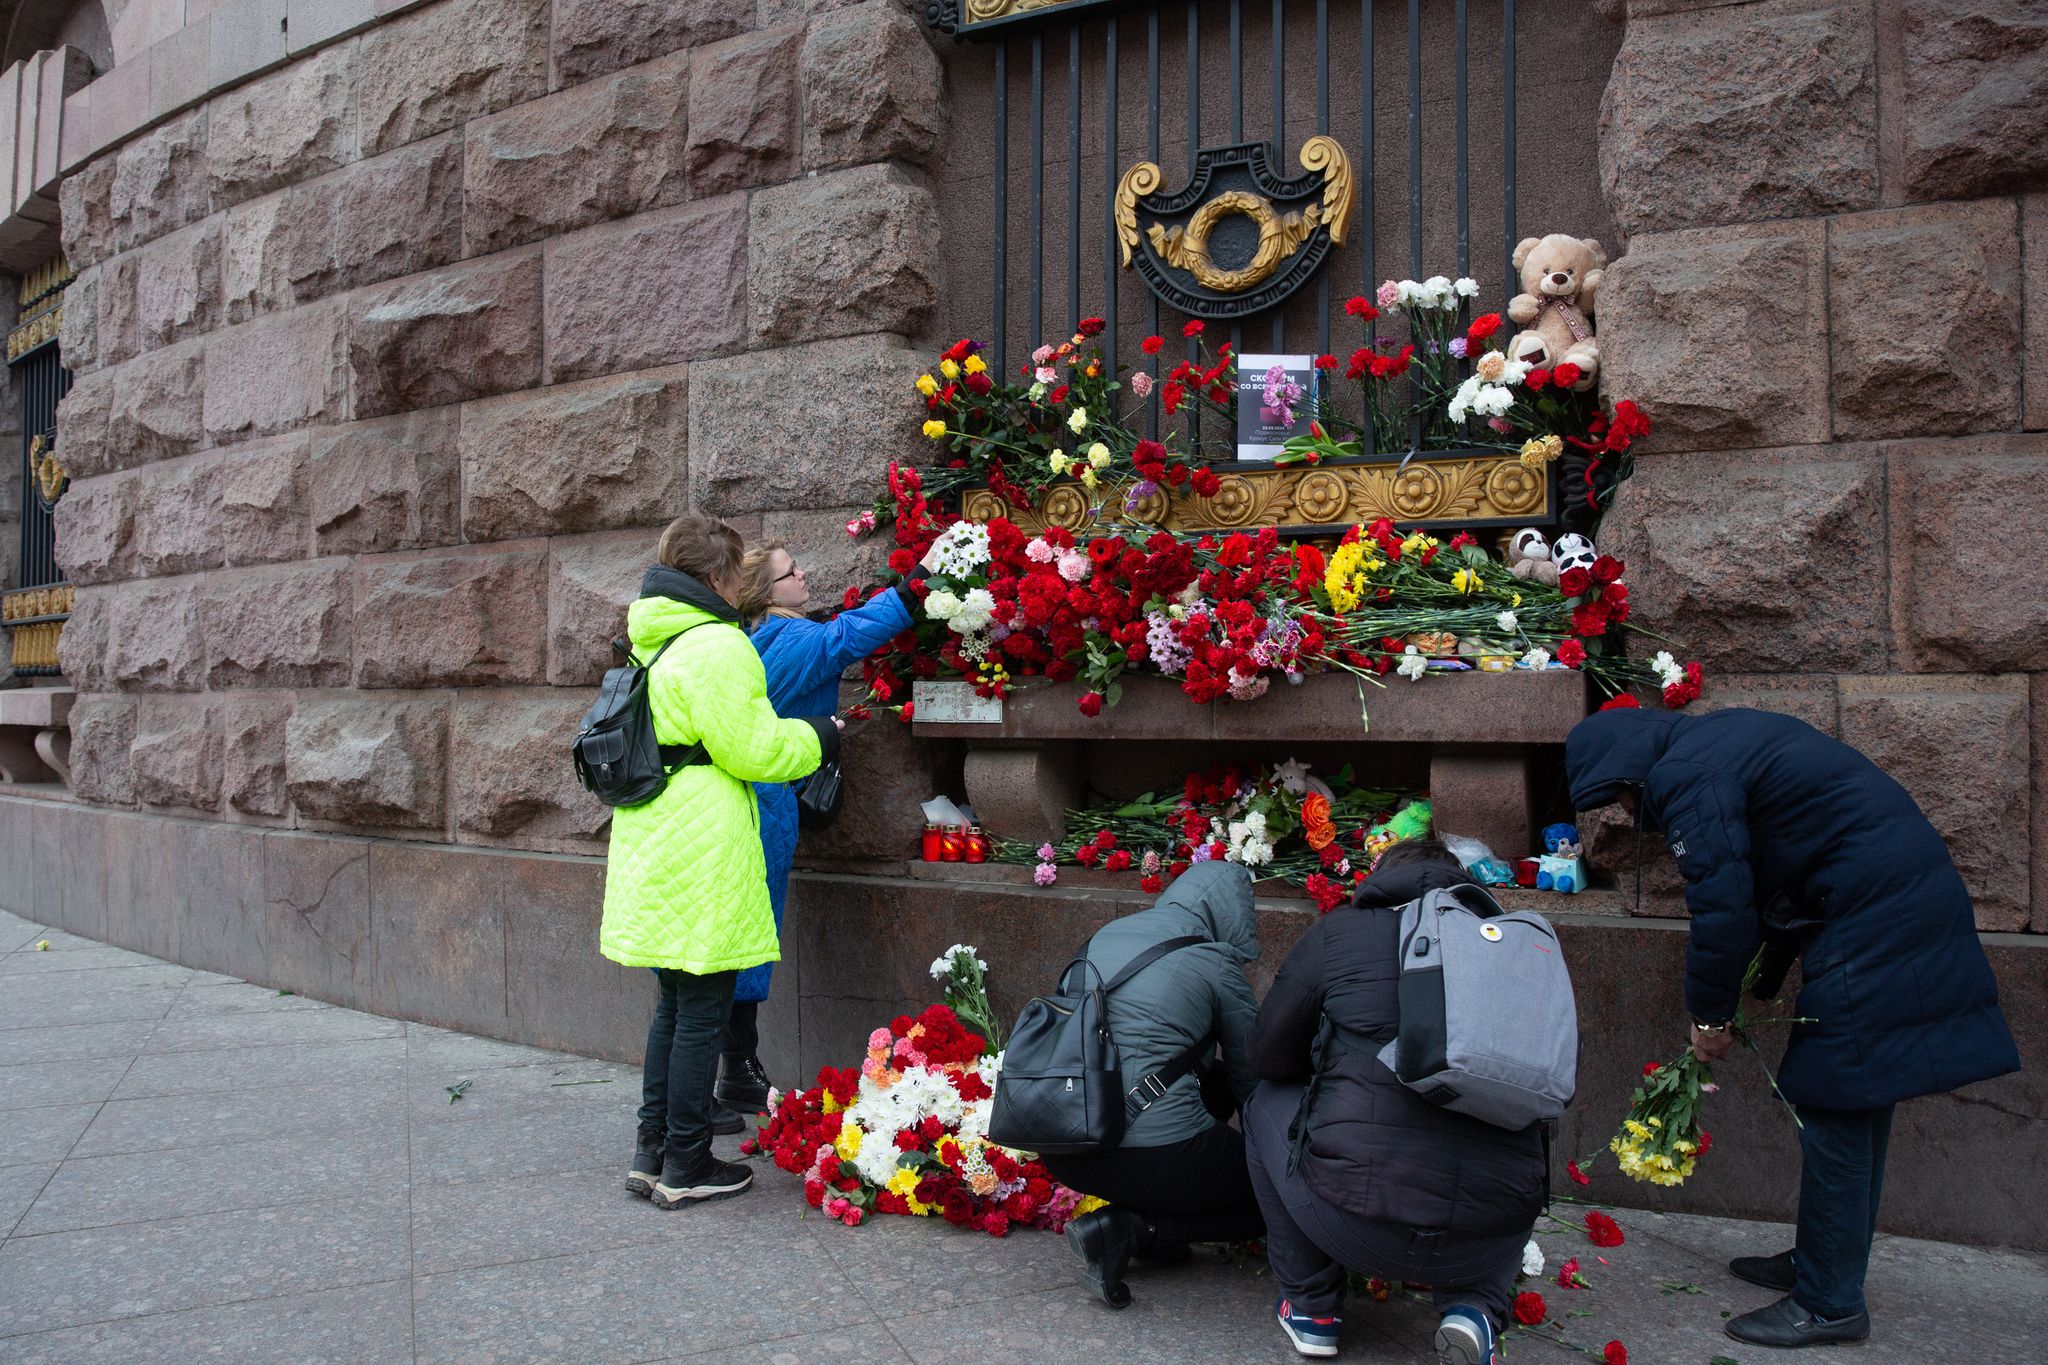 Terroranschlag bei Moskau: Was zur Tat bekannt ist